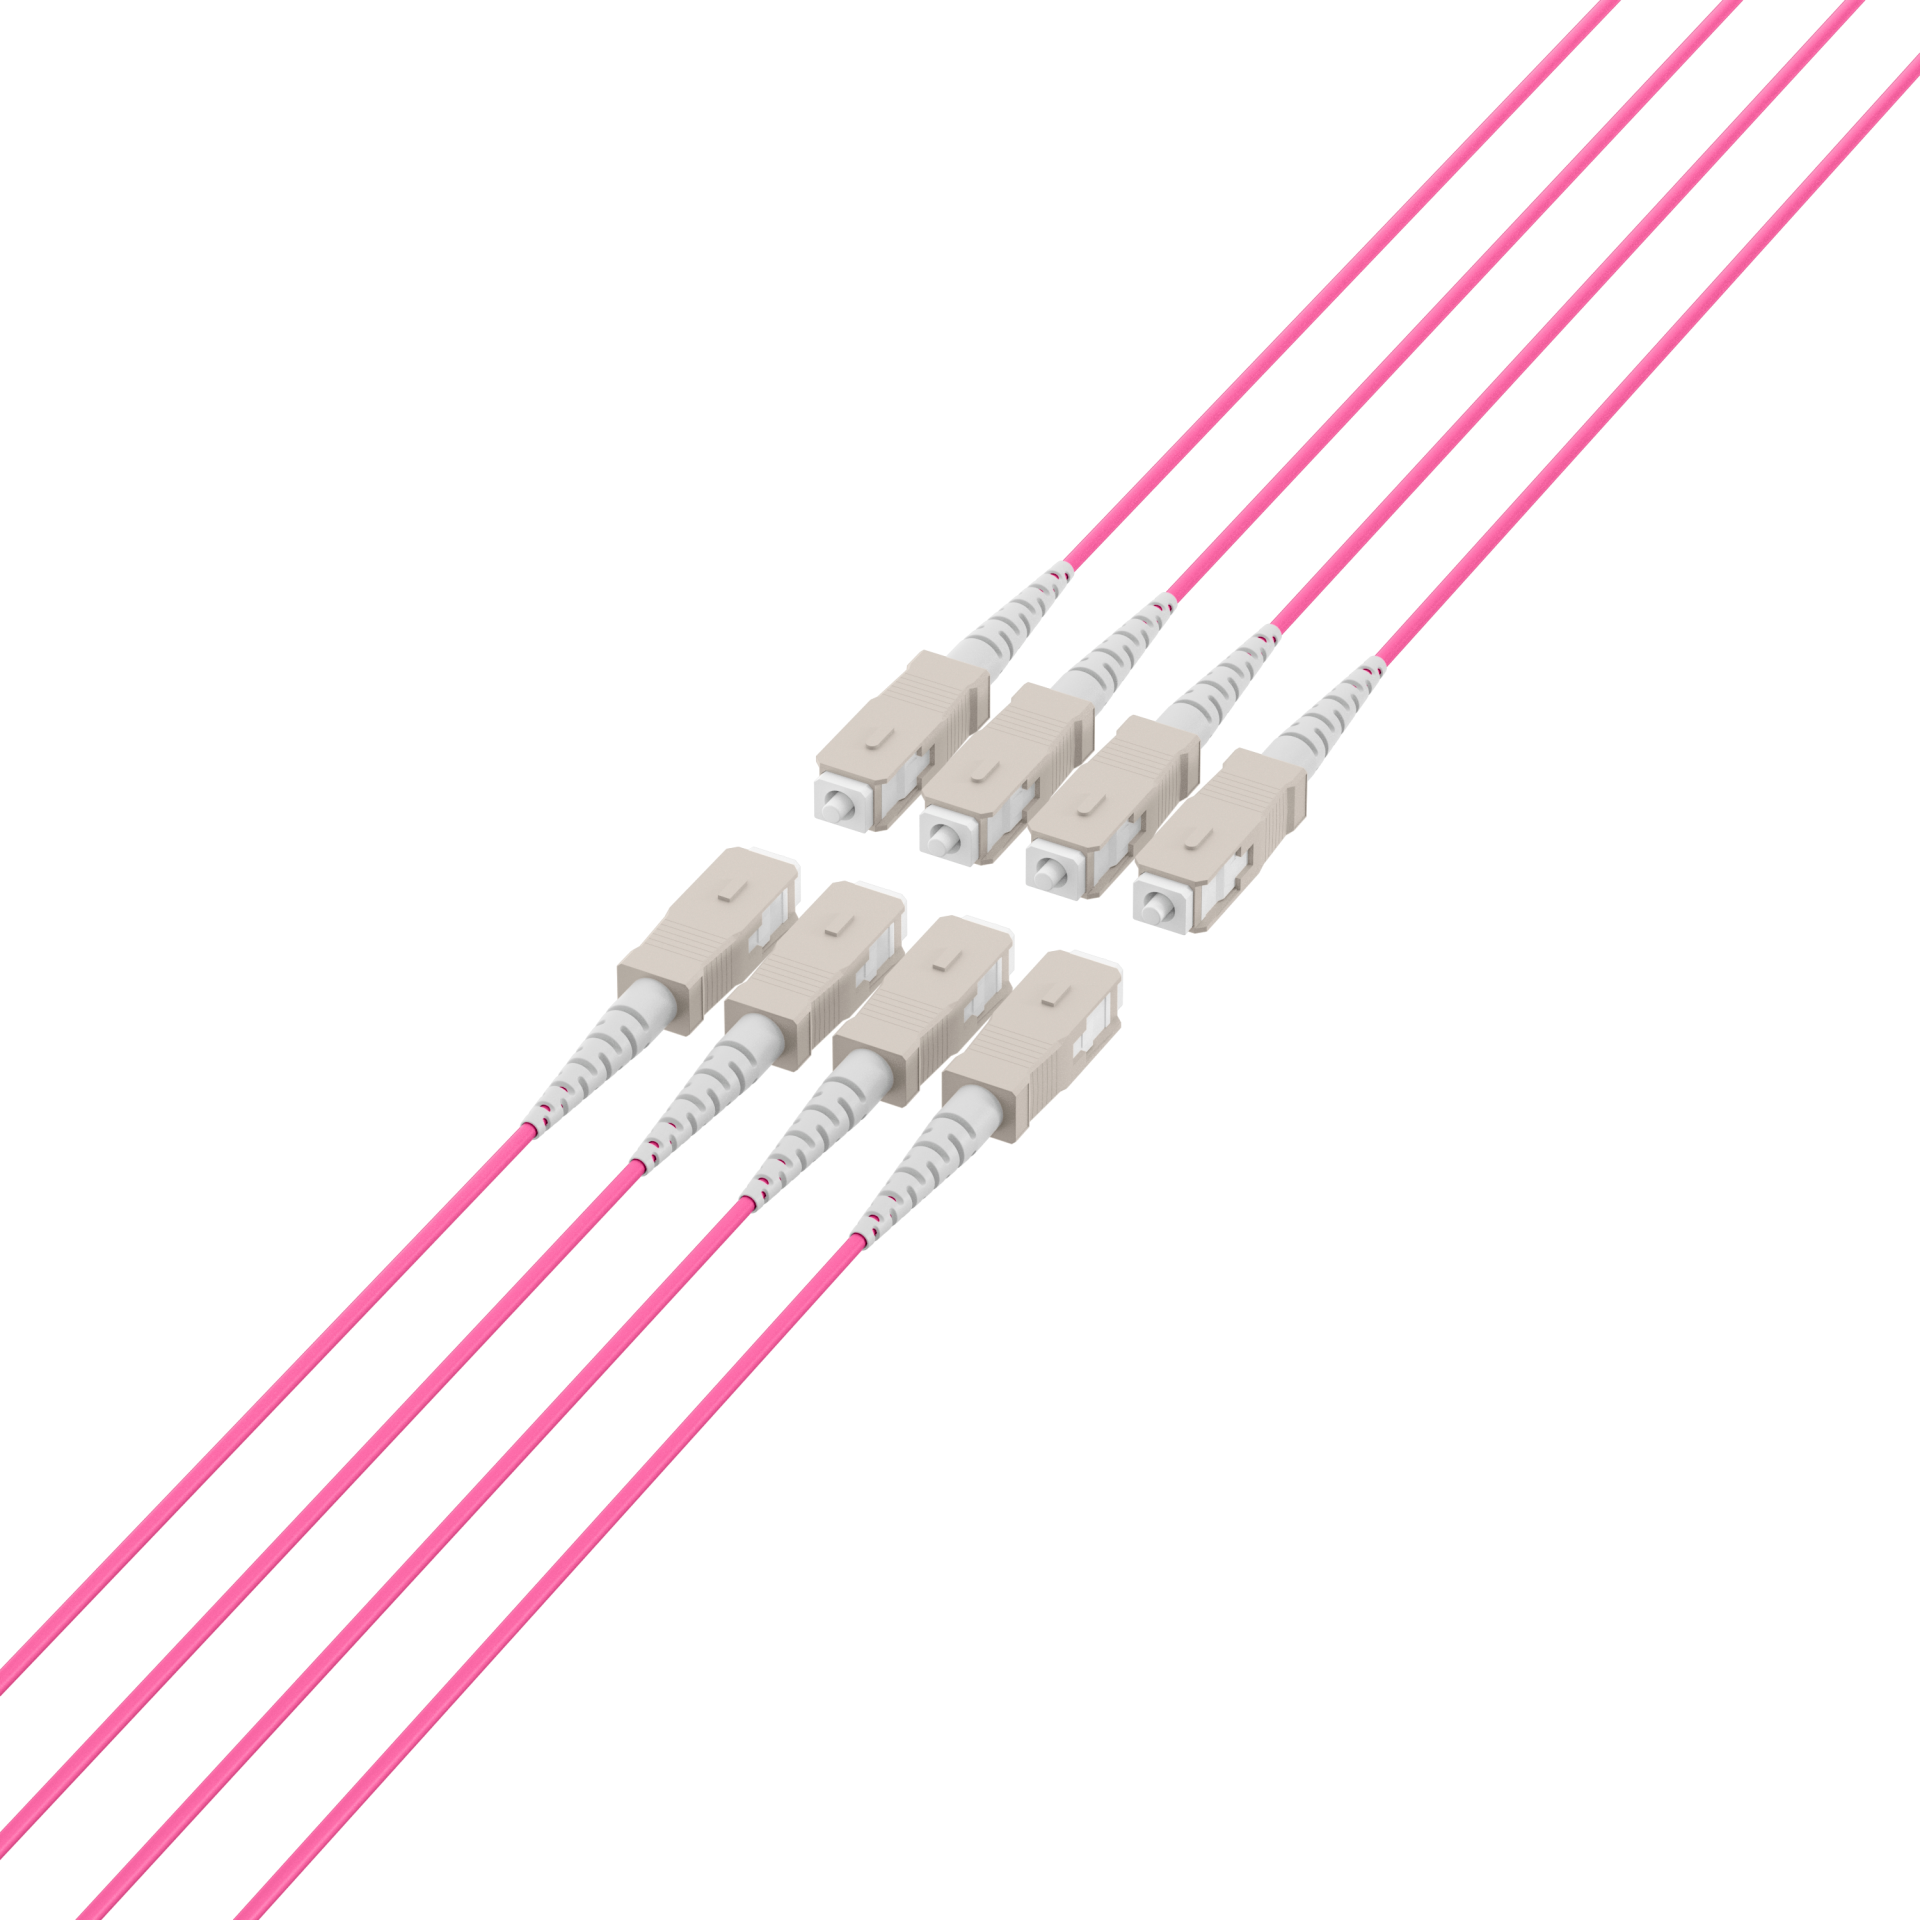 Trunk cable U-DQ(ZN)BH OM4 8G (1x8) SC-SC,80m Dca LSZH